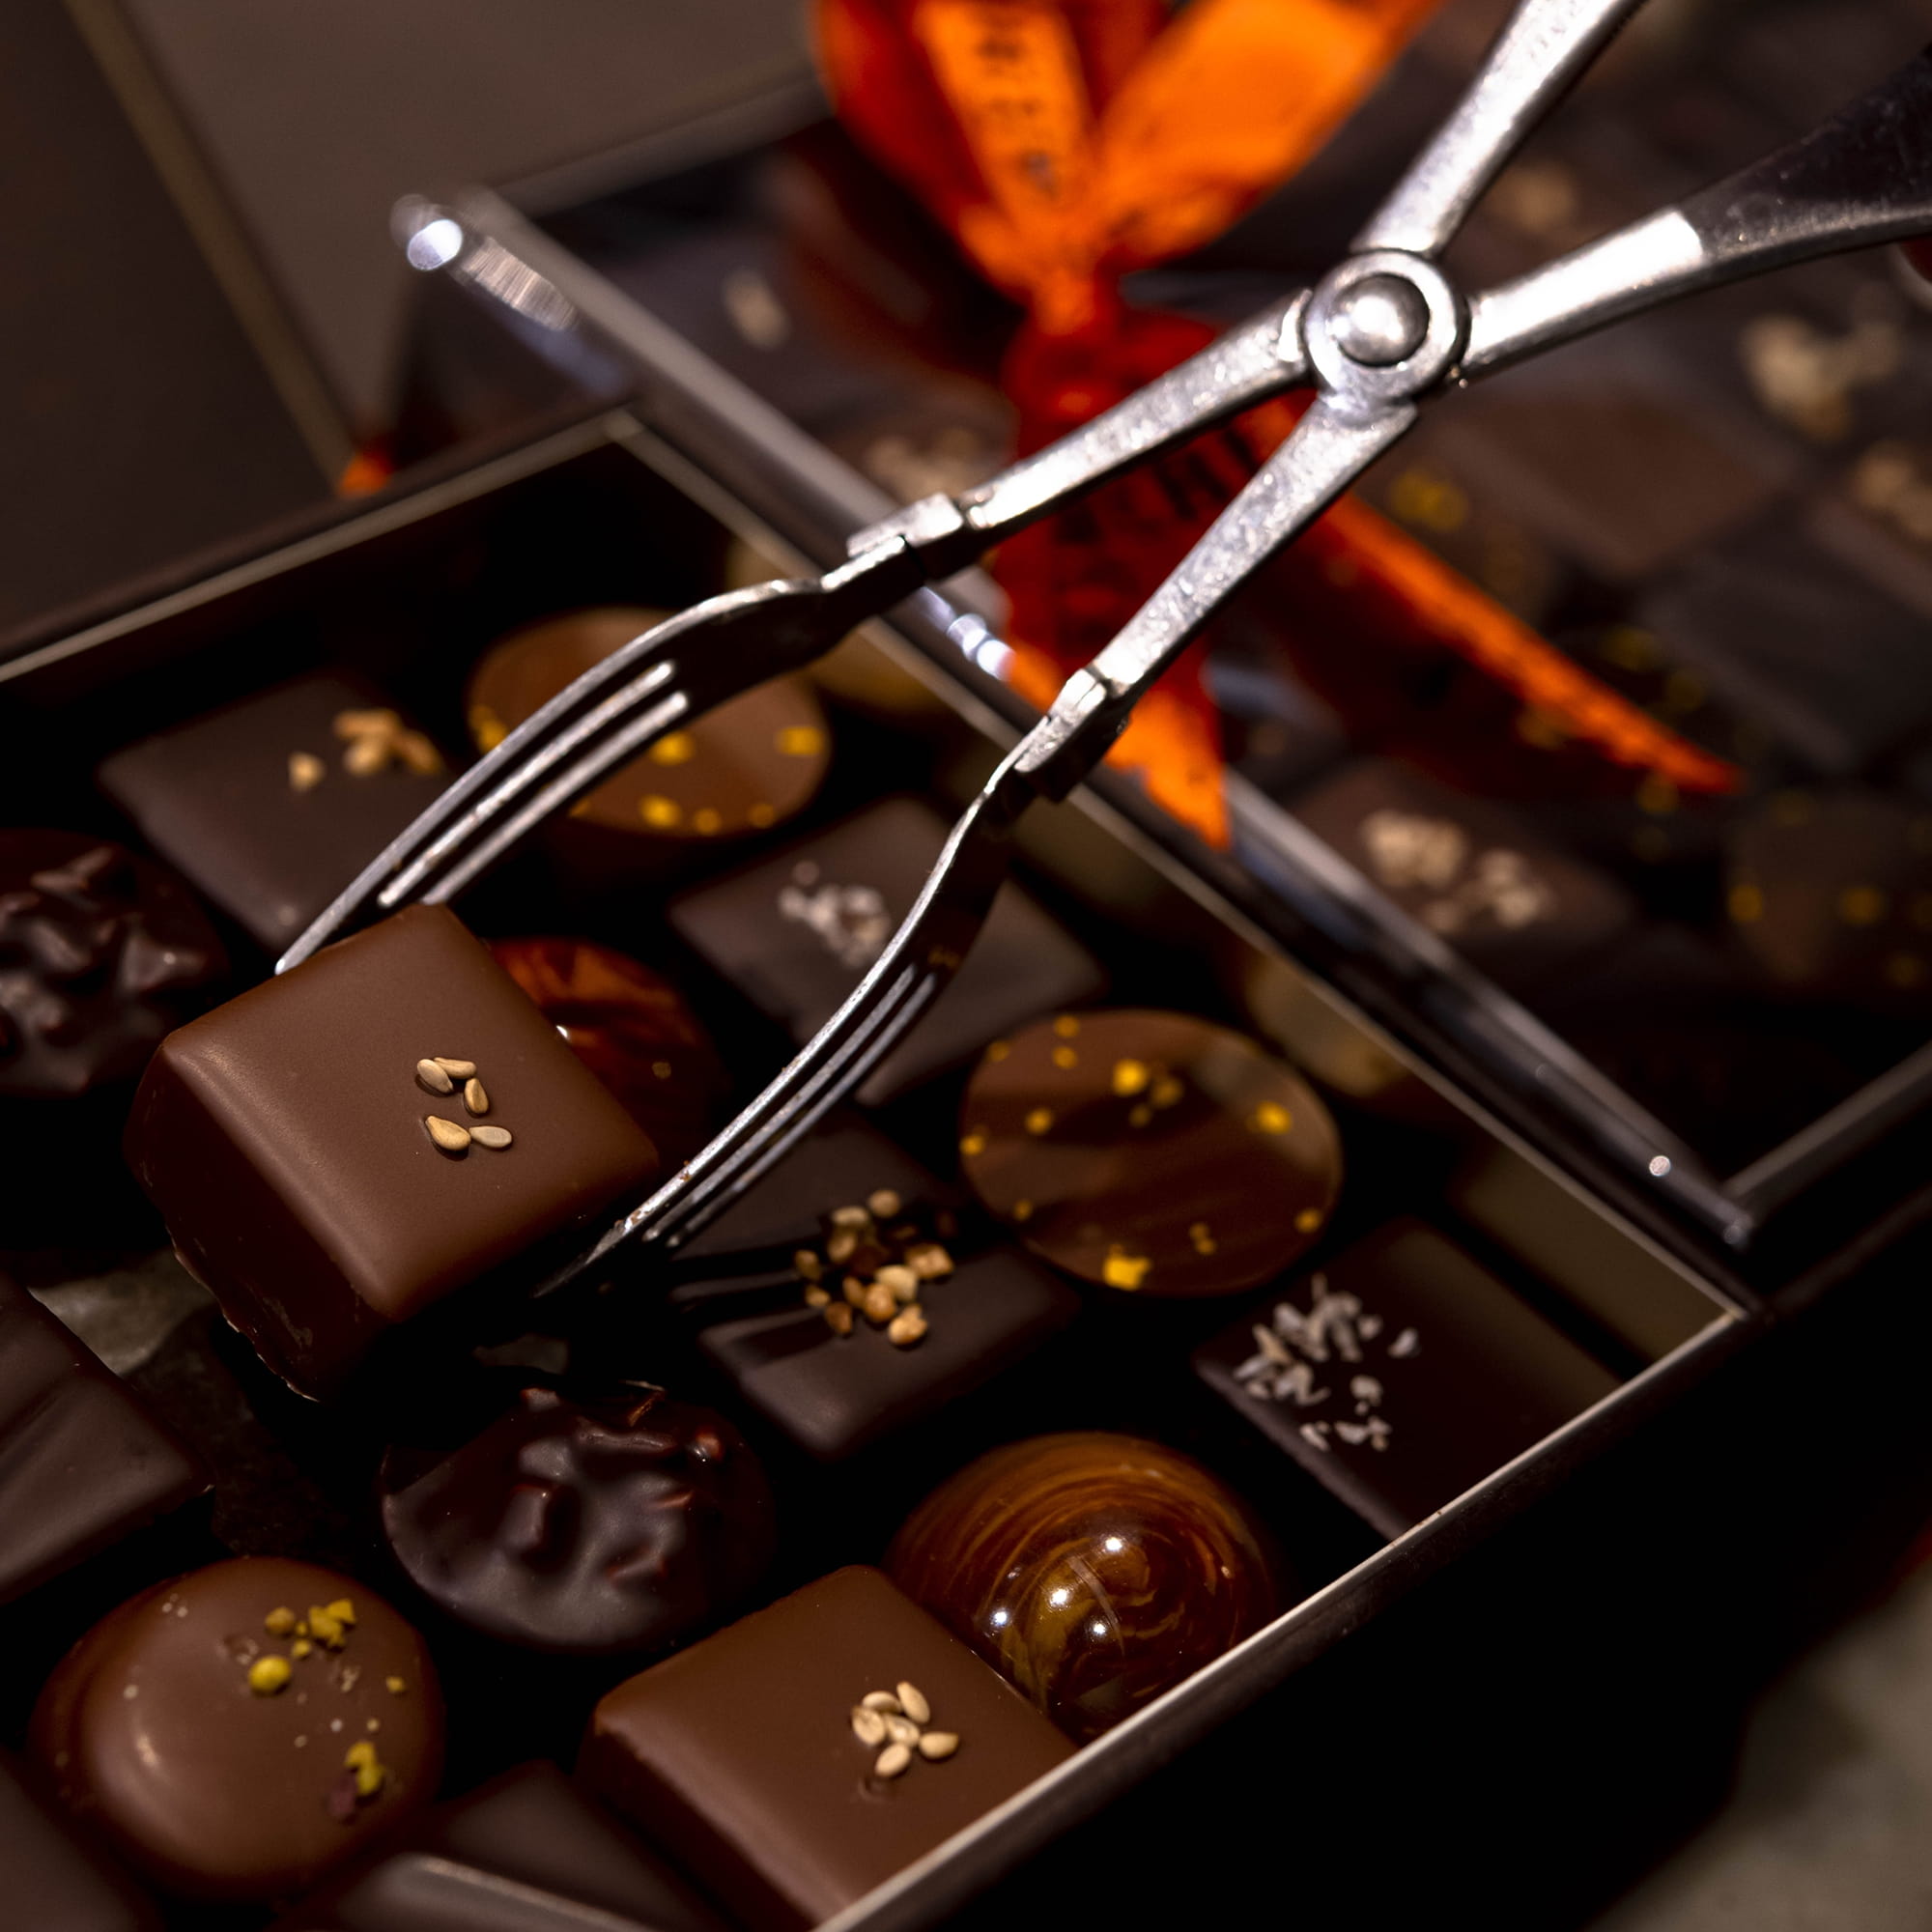 Coffrets de chocolats à offrir : notre sélection gourmande pour